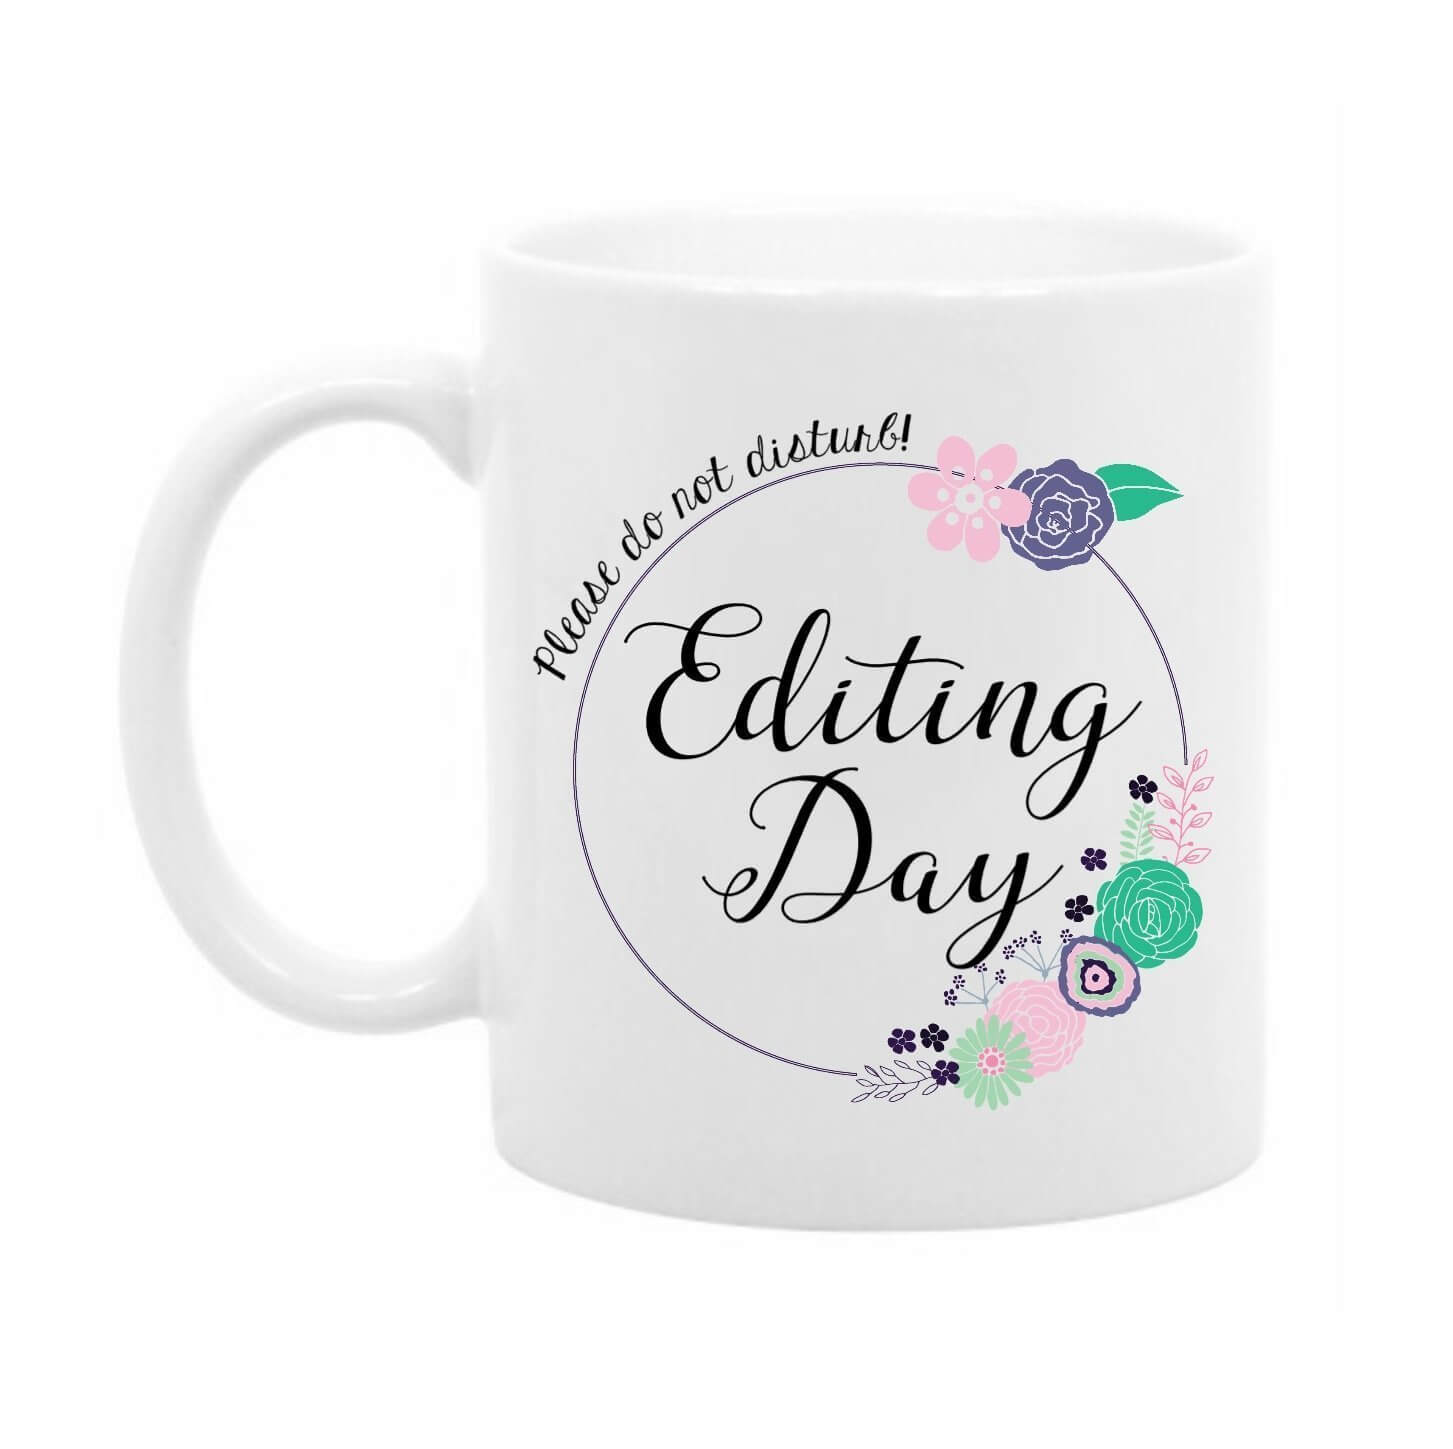 editing day mug